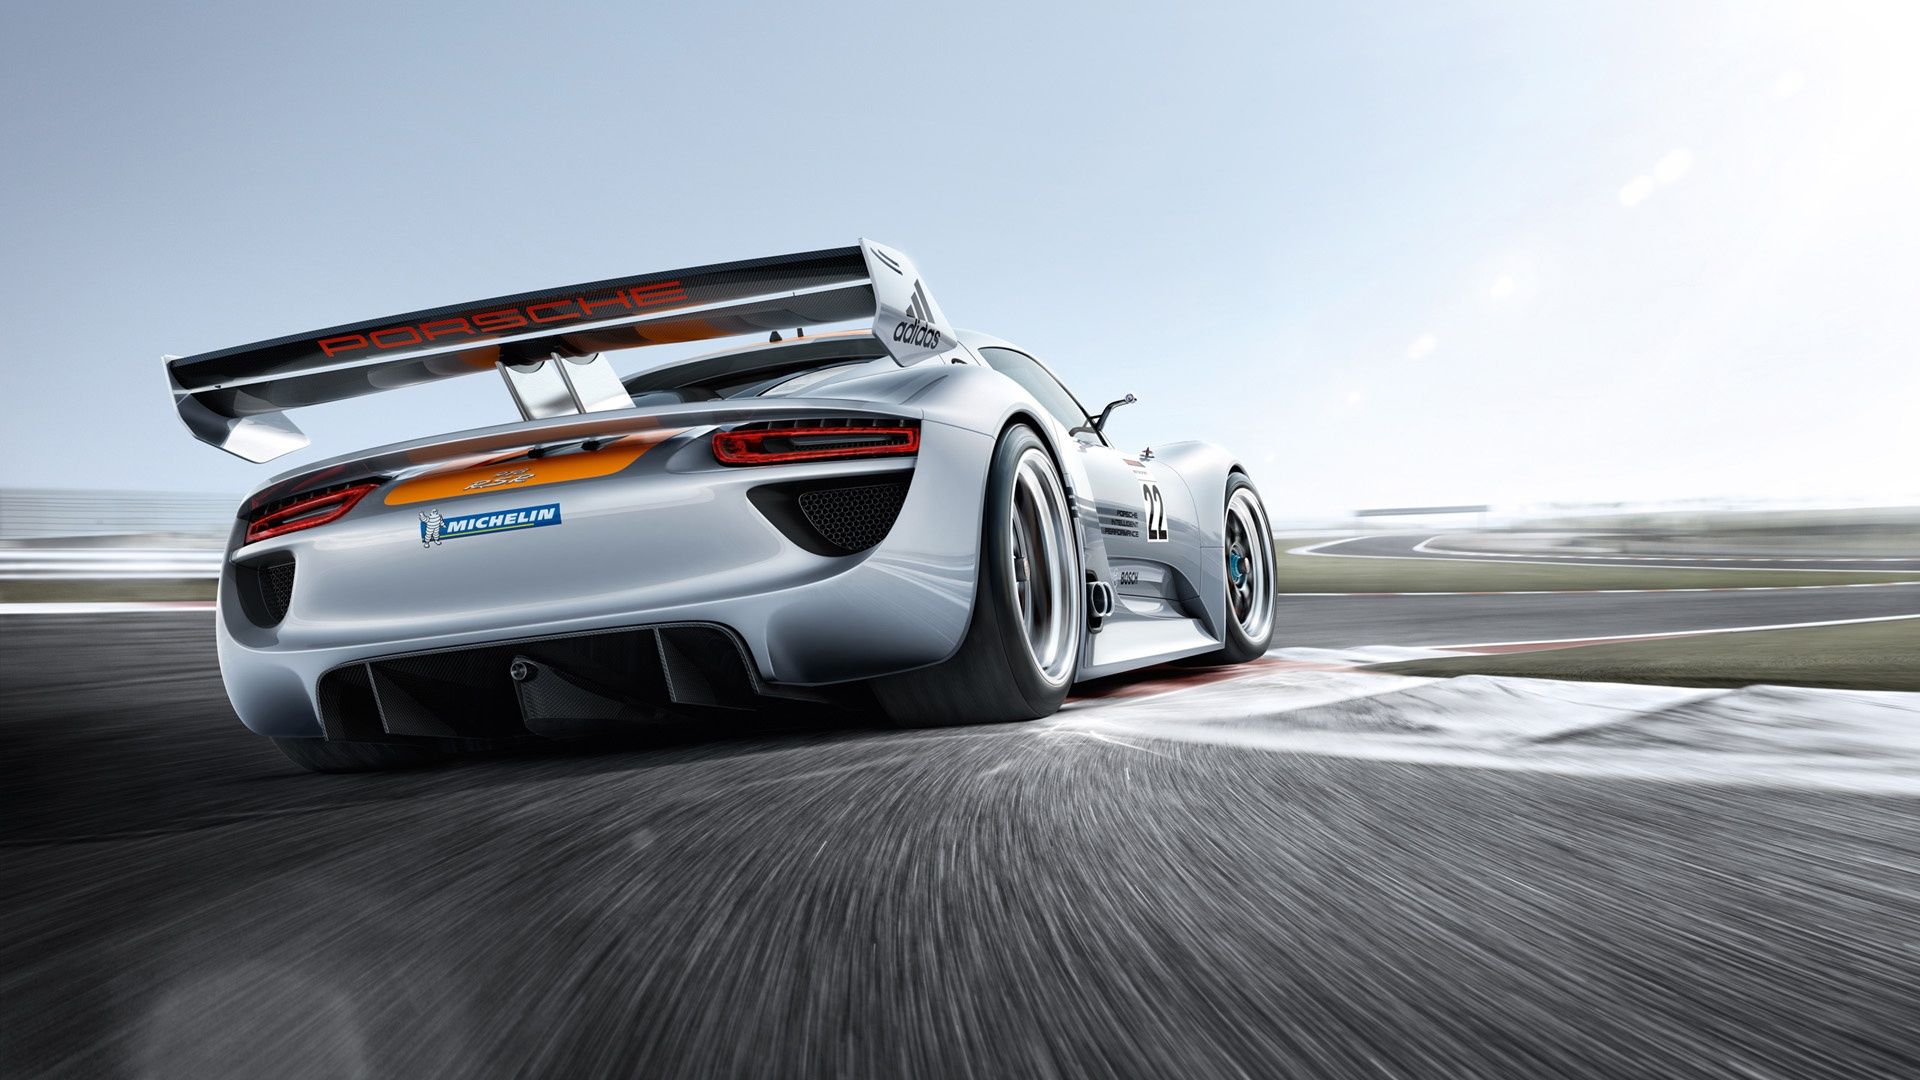 Porsche 918 Rsr F1 Racing Modified Car White Wallpaper - Fondos De Autos Para Pc - HD Wallpaper 